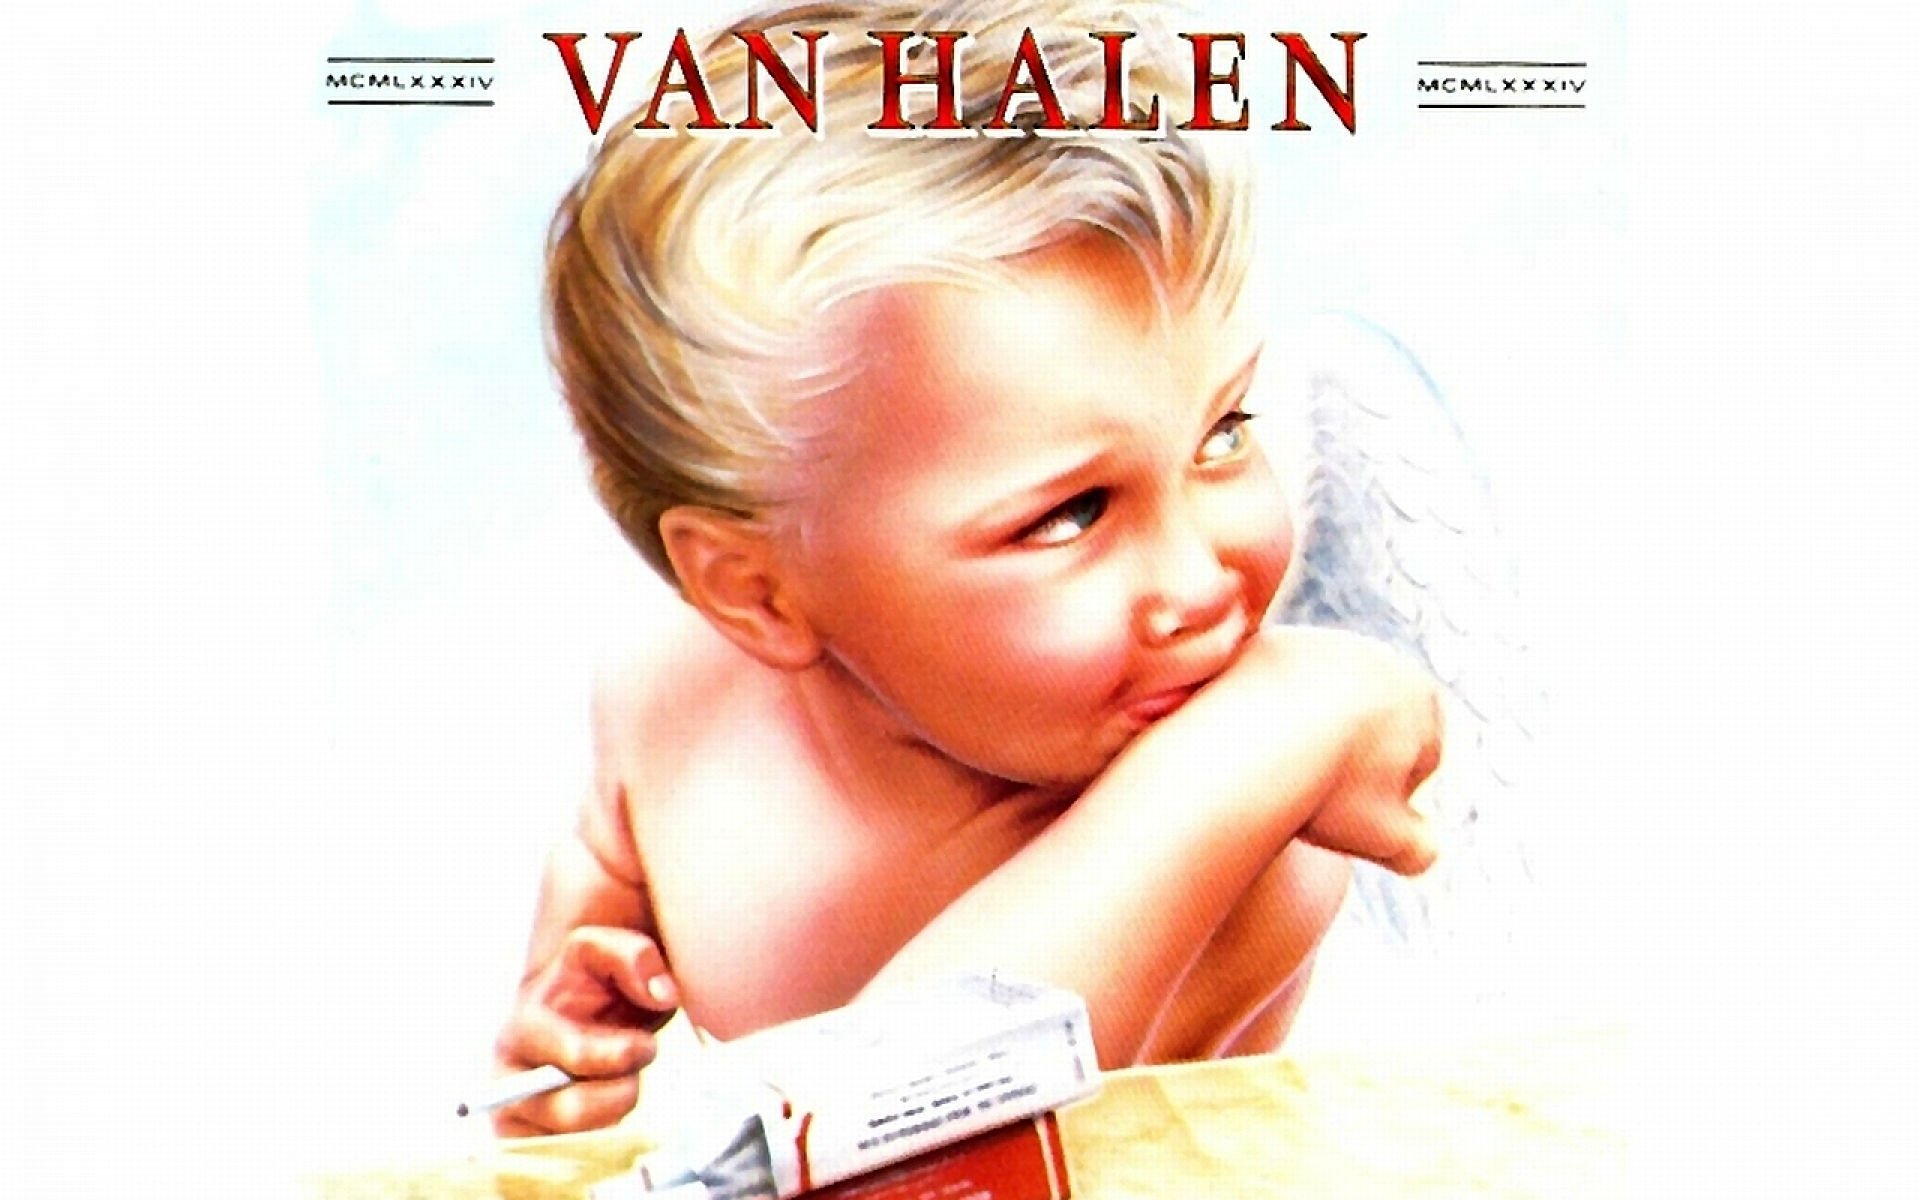 Van Halen Hard Rock Heavy Metal Classic Poster Baby Wallpaper